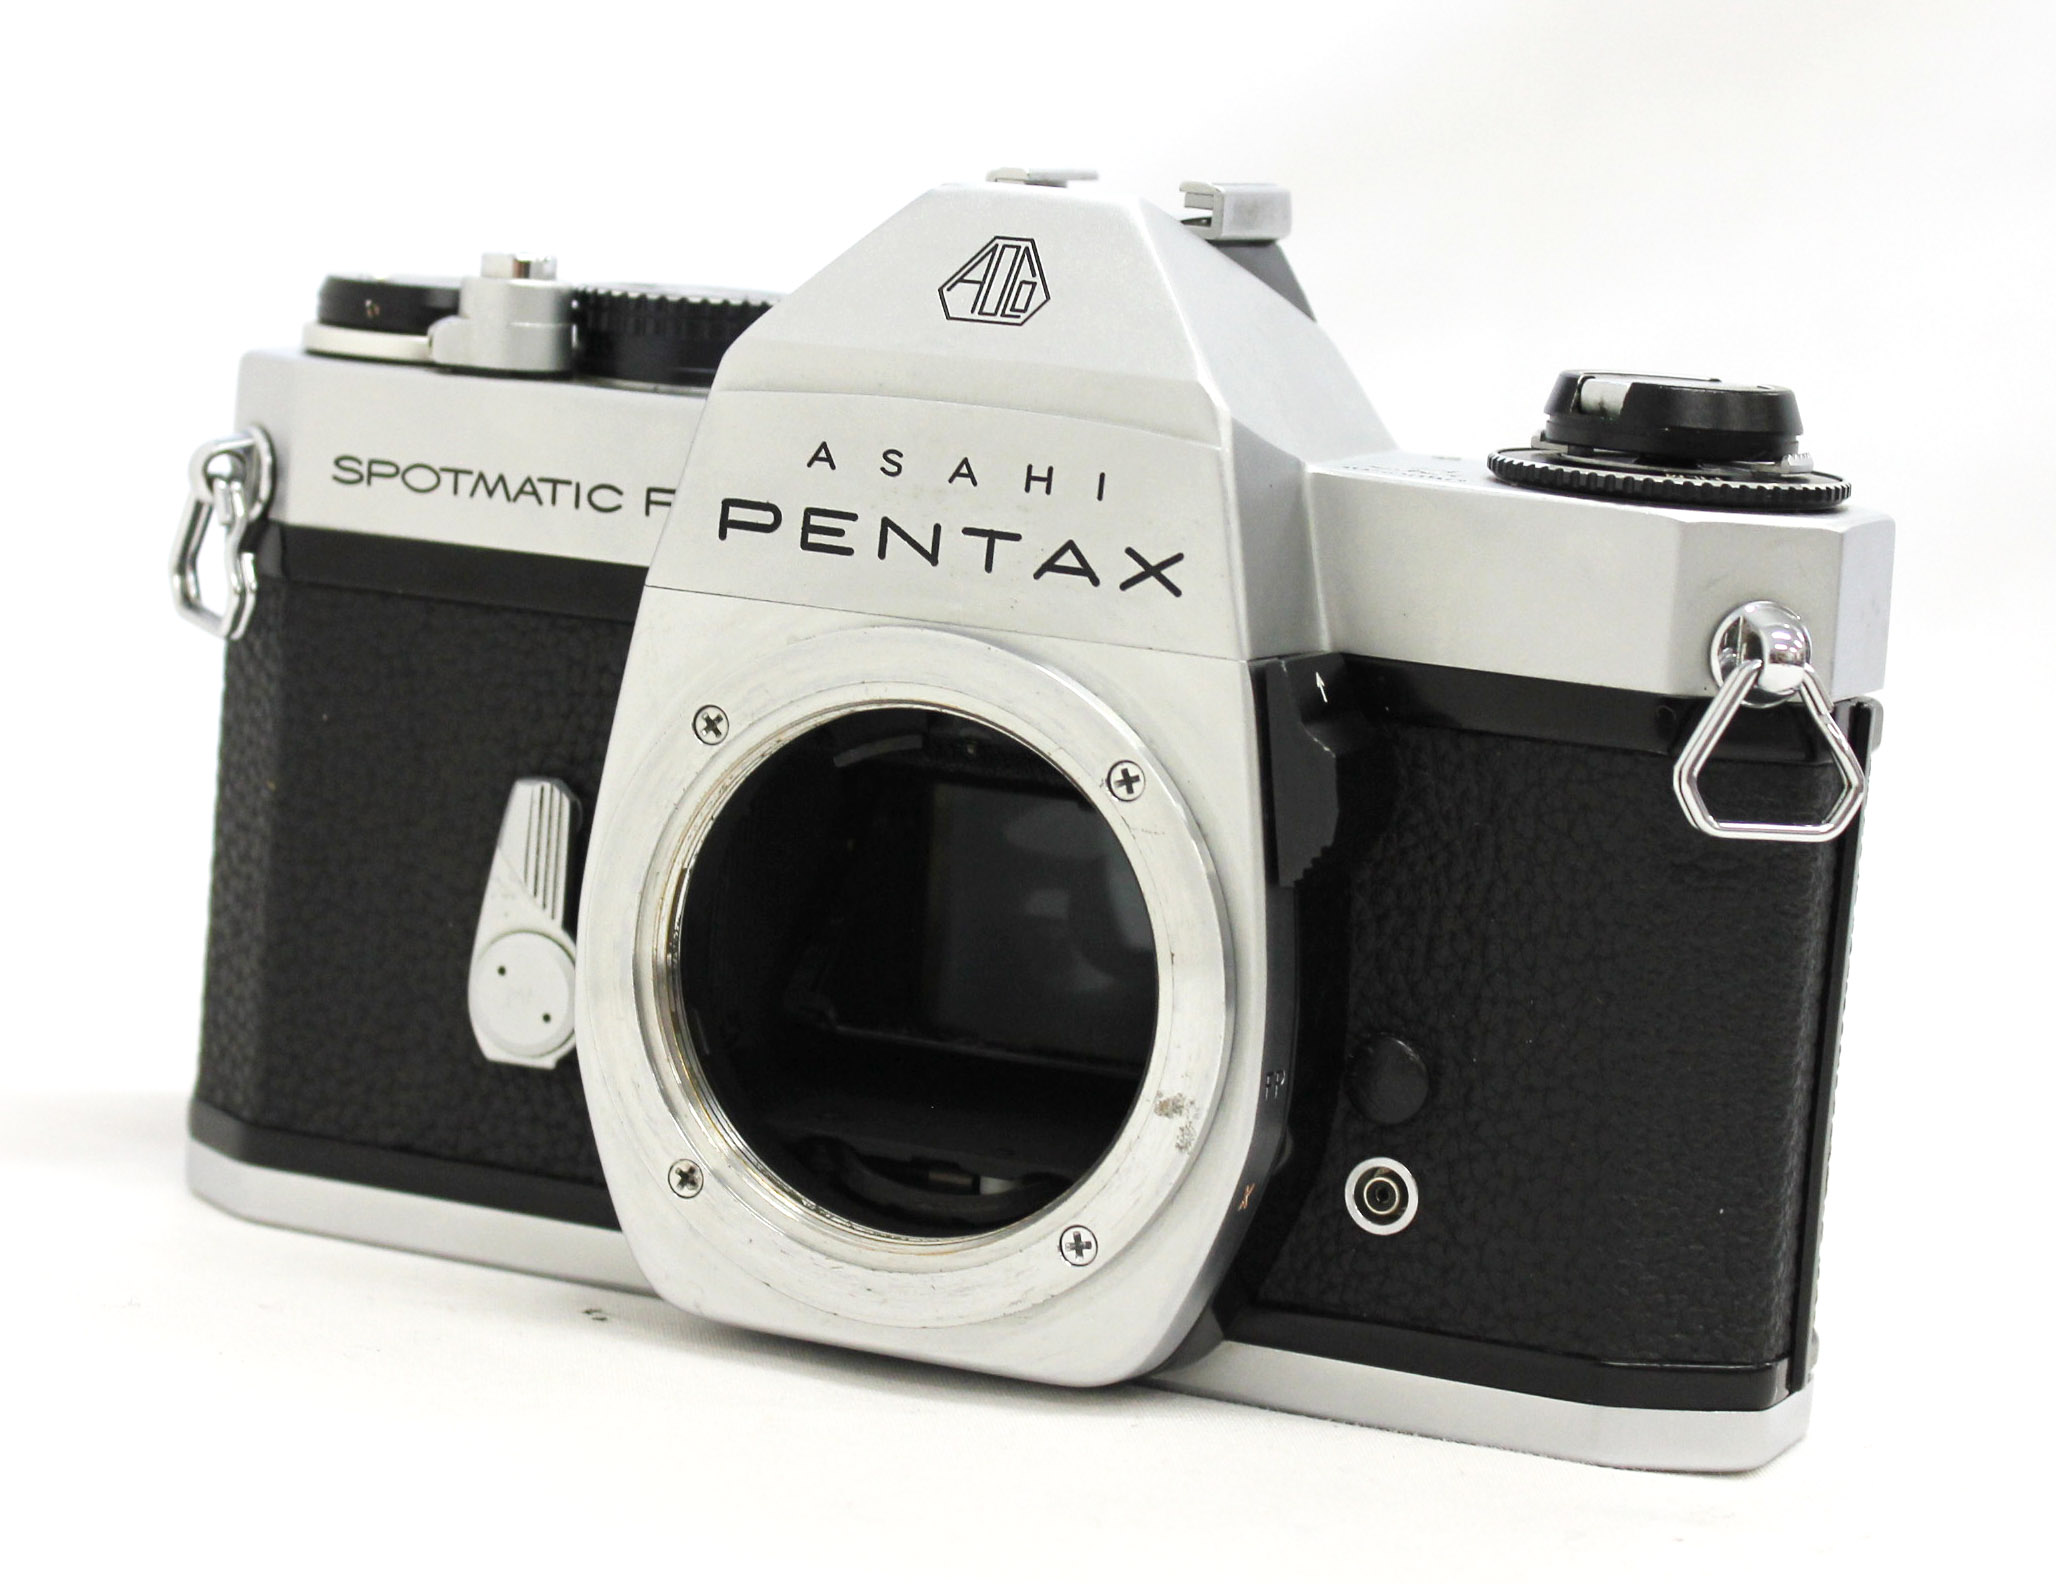 Asahi Pentax Spotmatic F SPF Camera w/ Super Takumar 55mm F/1.8